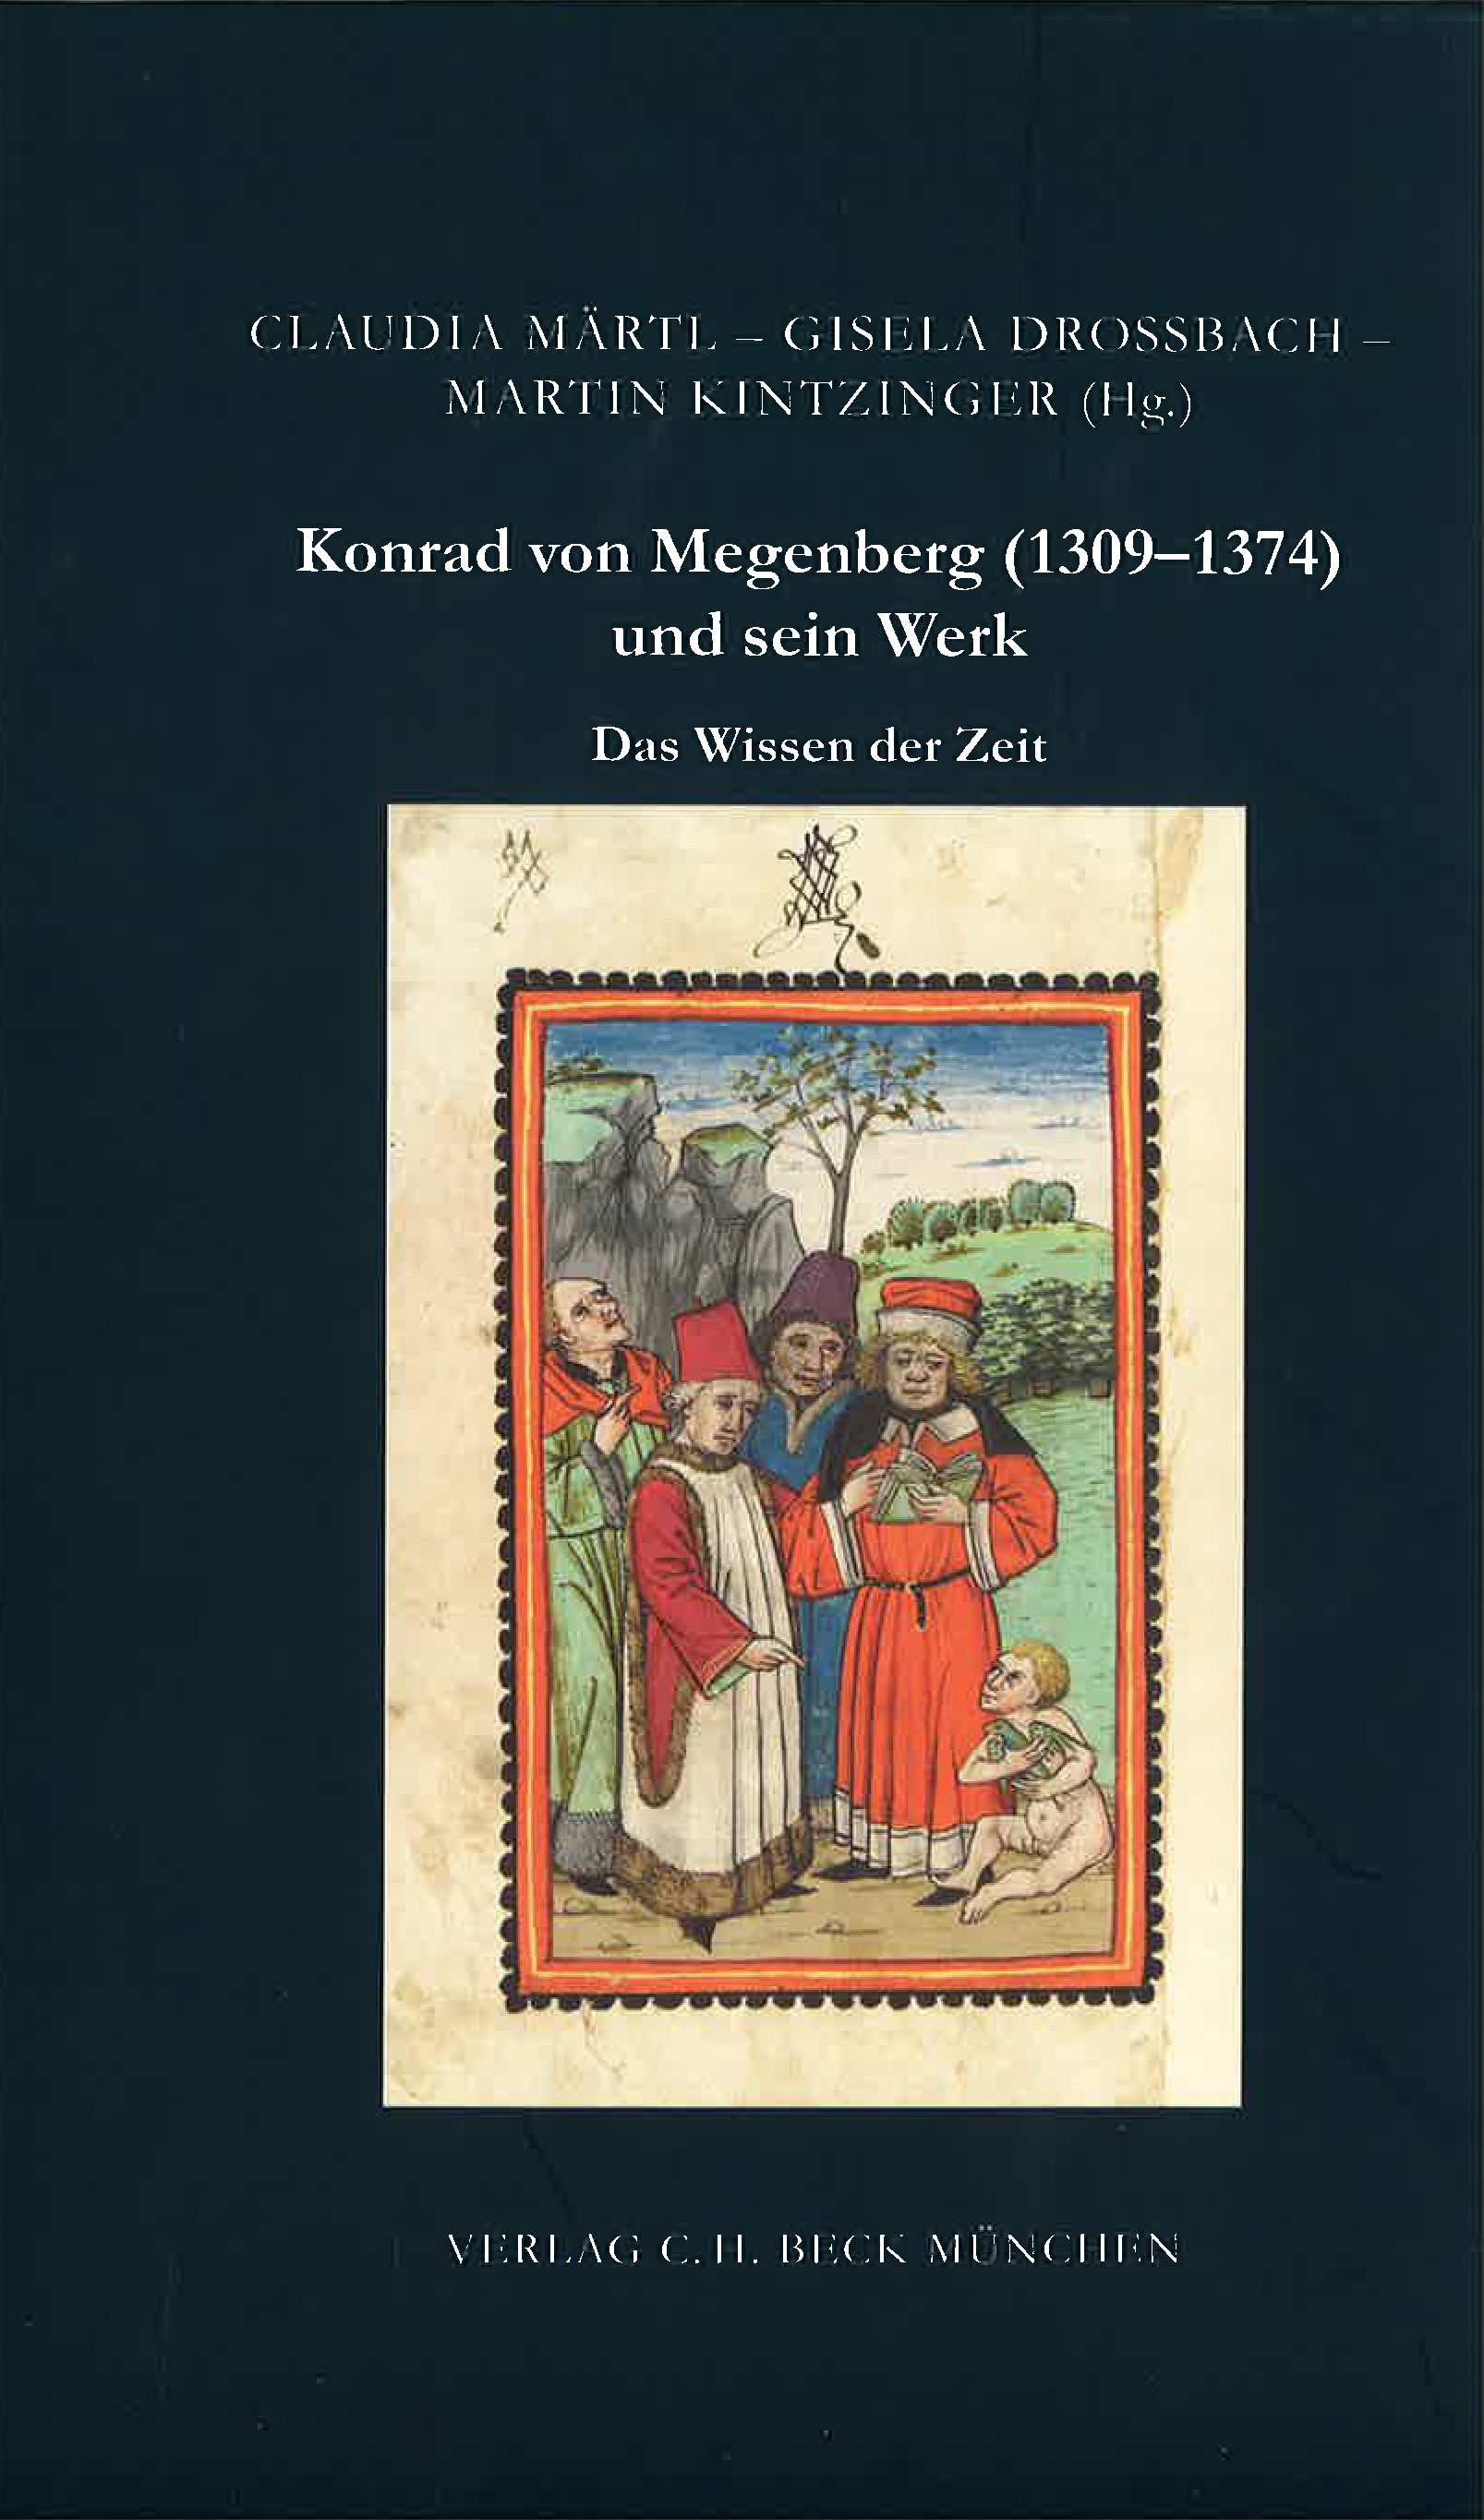 Cover: Märtl, Claudia / Drossbach, Gisela / Kintzinger, Martin, Das Wissen der Zeit. Konrad von Megenberg (1309-1374) und sein Werk